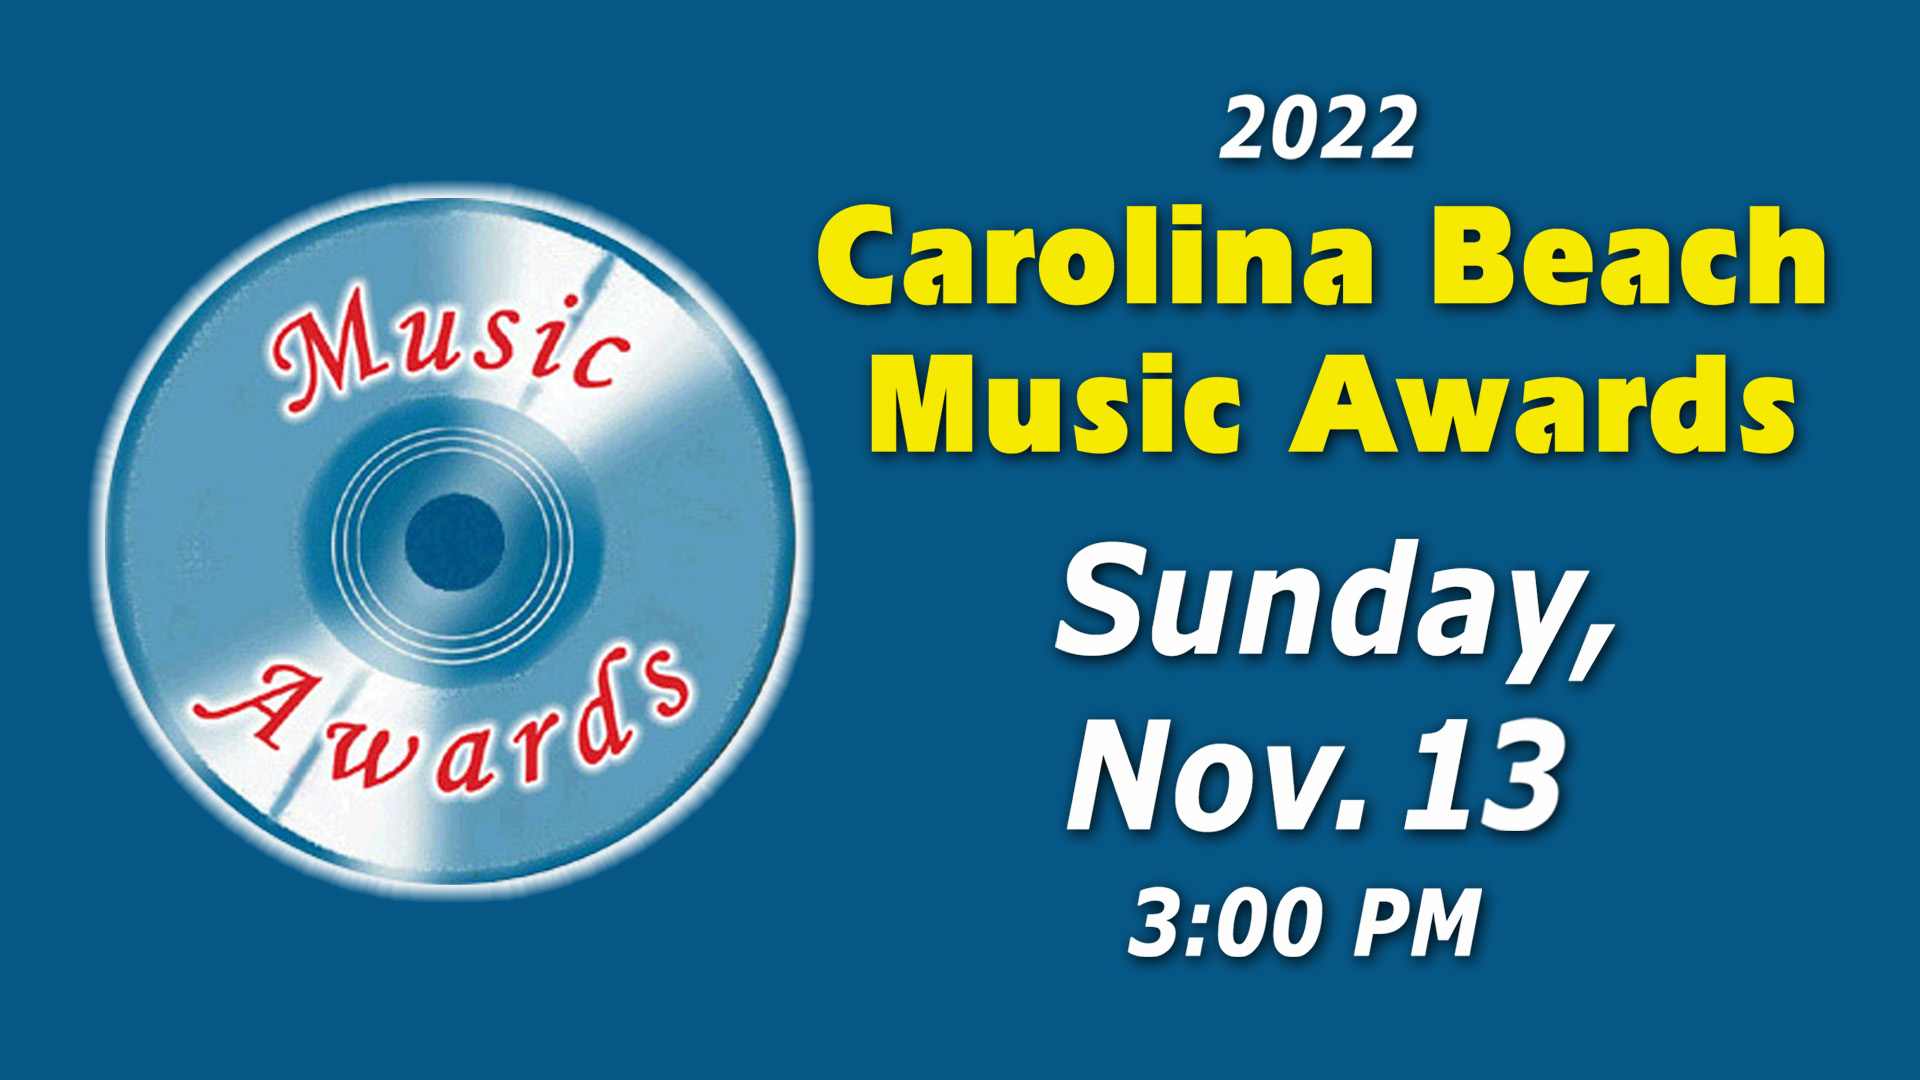 Carolina Beach Music Awards 2022